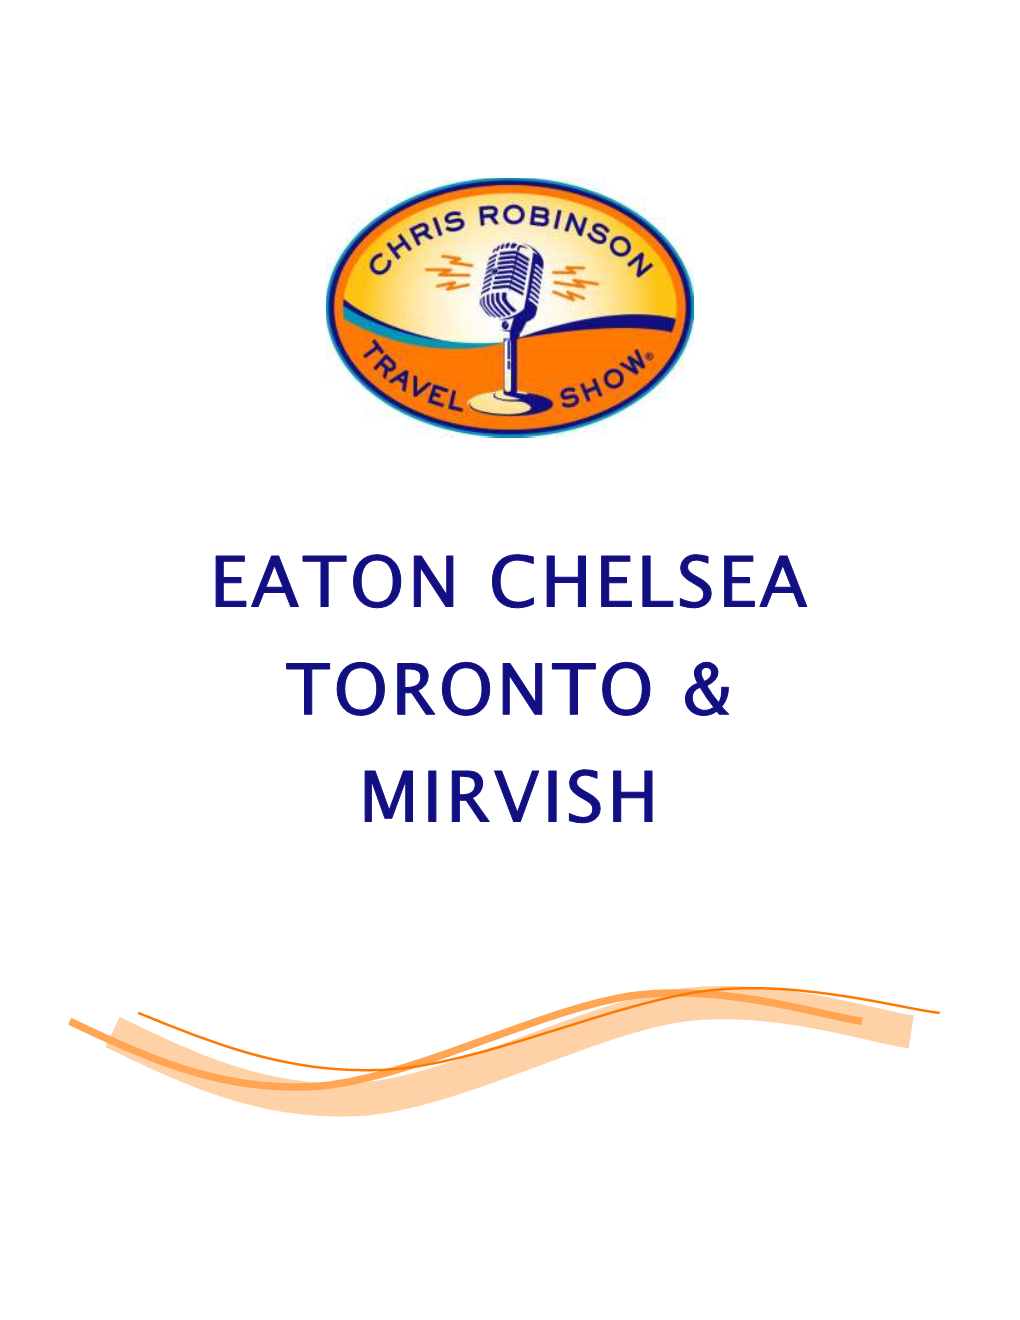 Eaton Chelsea Toronto & Mirvish